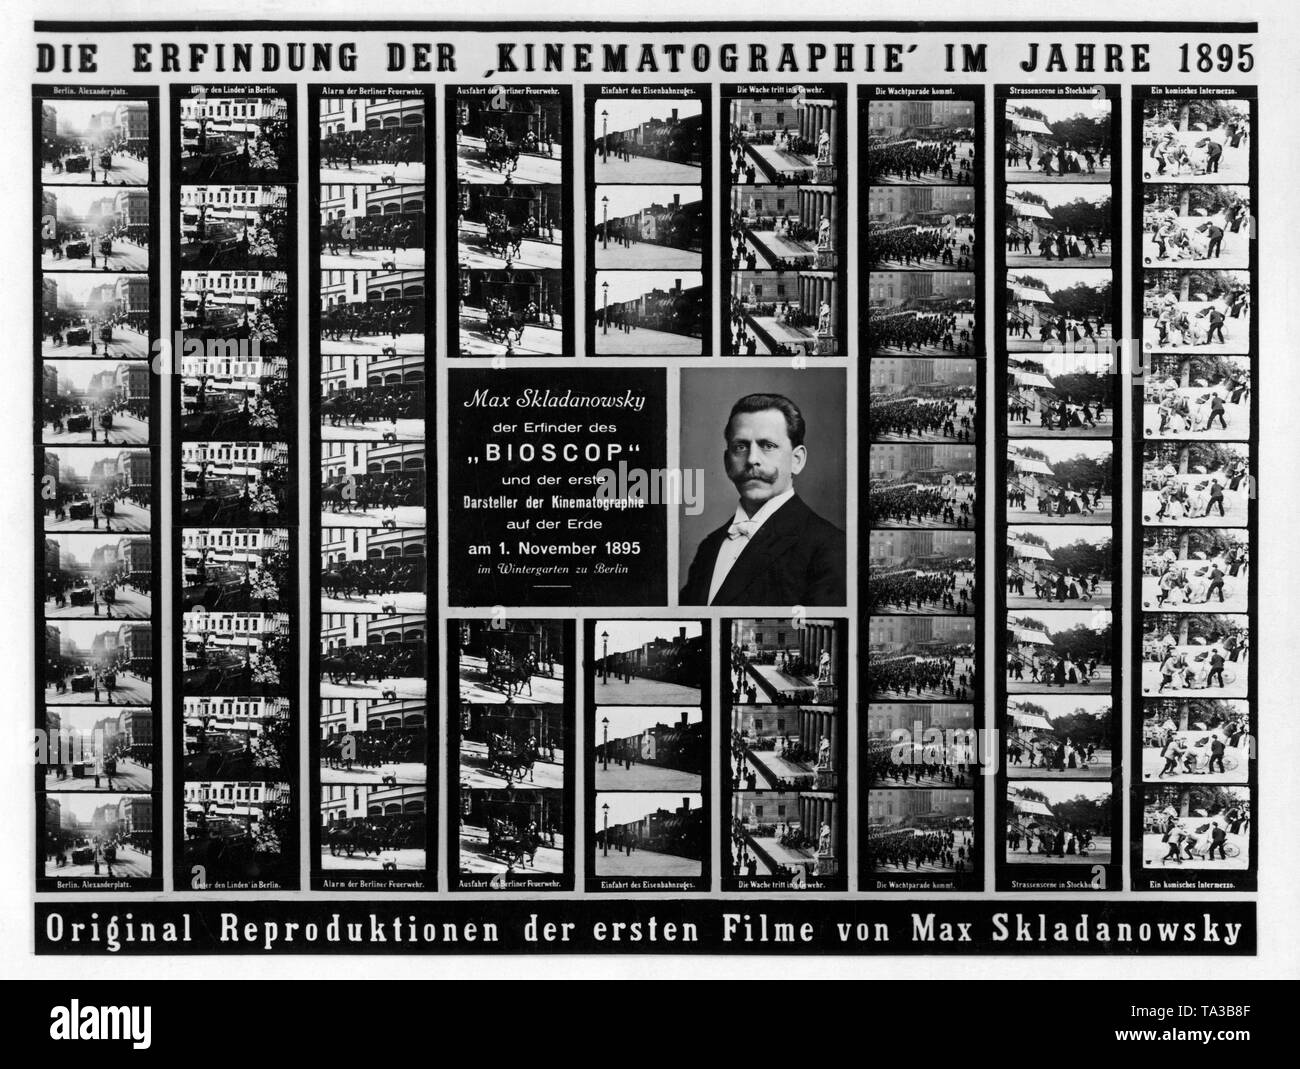 Ein Plakat wirbt für die Vorführung von Filmen Filmpionier Max Skladanwsky im Wintergarten, Belin. Um Skladanowsky das Porträt, bildstreifen für seine Bioscope. Ein bioscope ist ein Projektor, der für das Screening verwendet wurde. Stockfoto